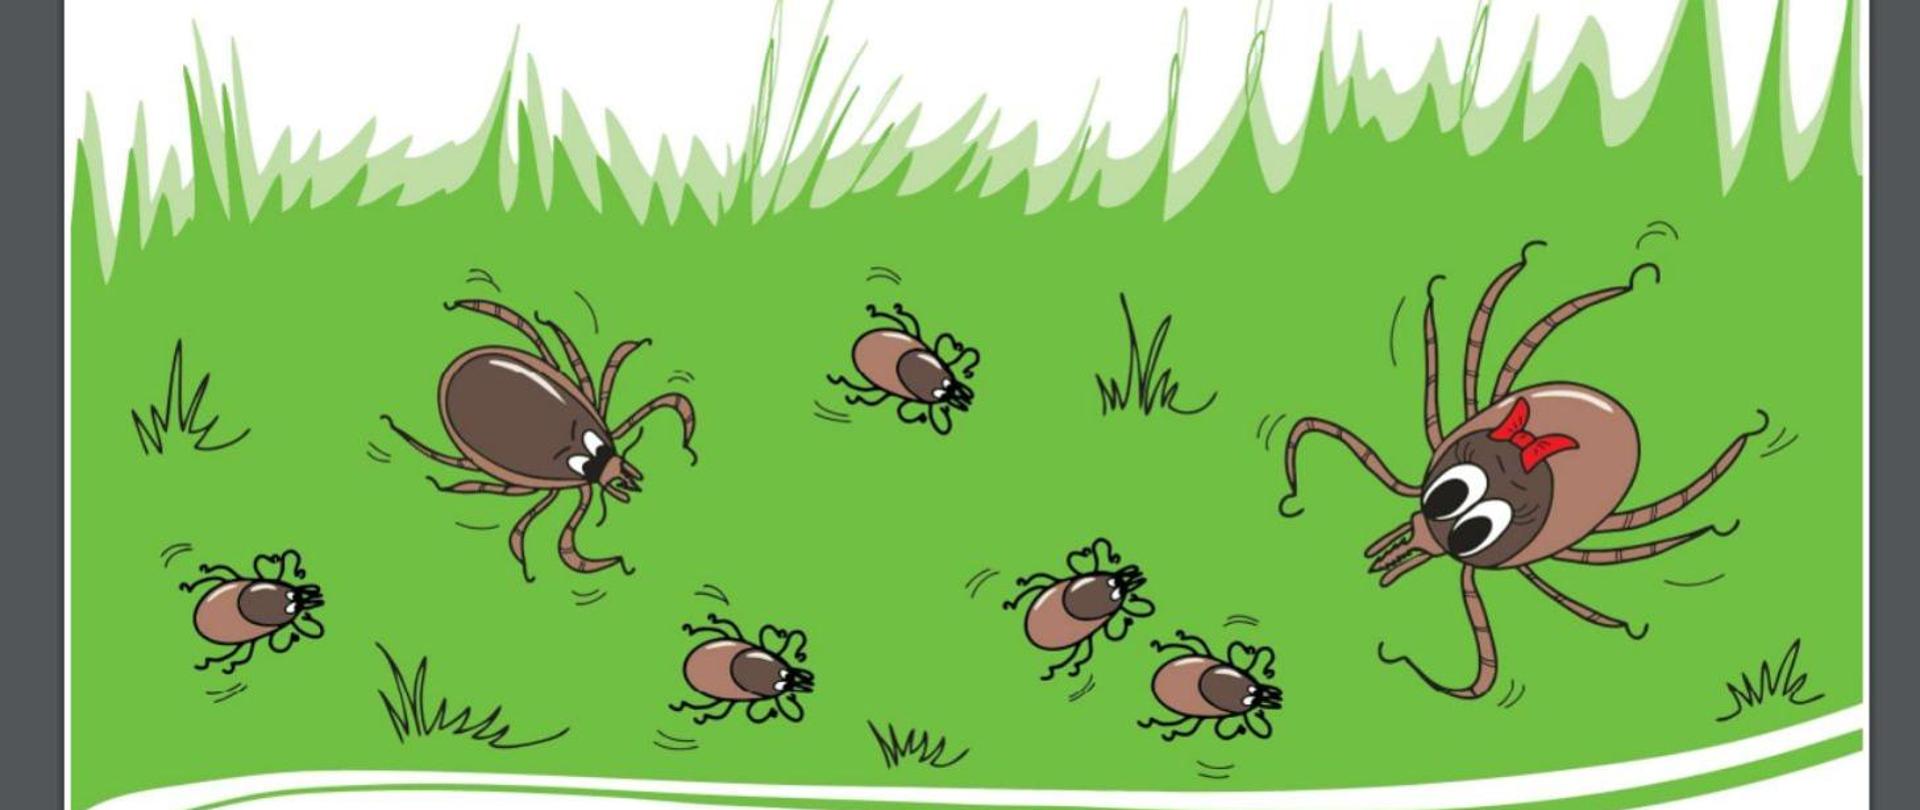 Ilustracja przedstawia kleszcze znajdujące się w trawie.